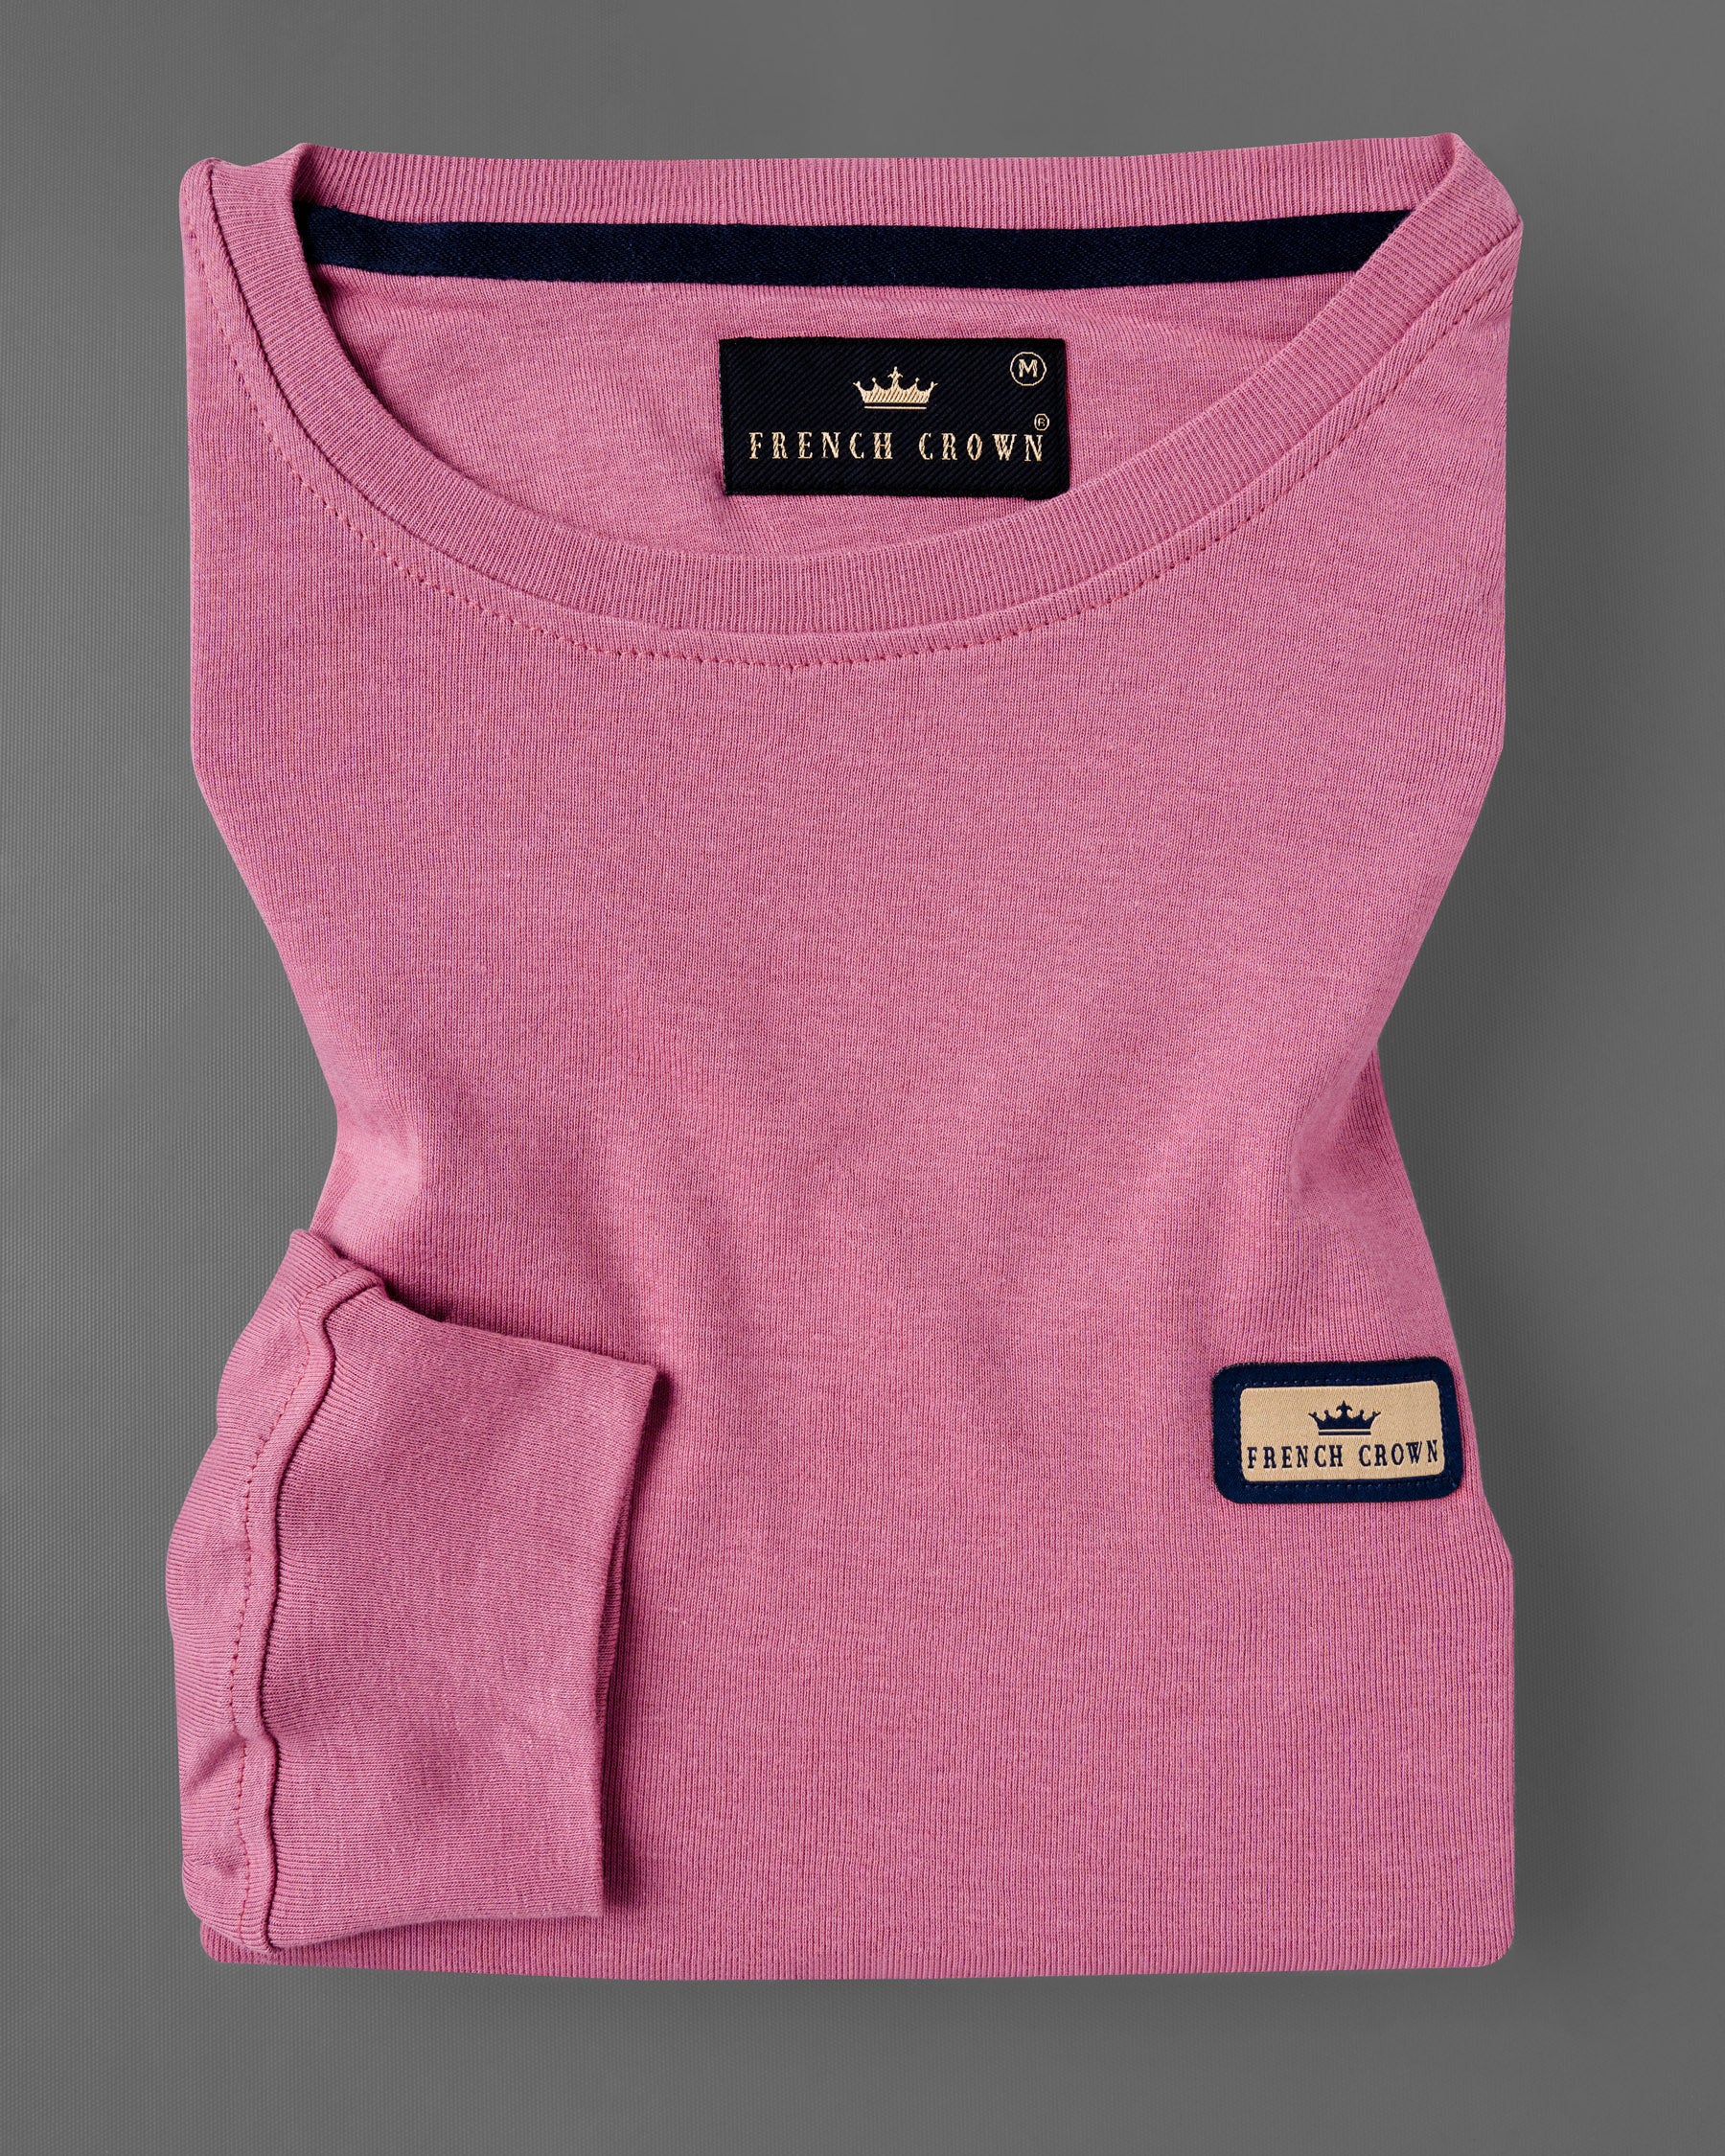 Charm Mauve Full Sleeve Premium Cotton Jersey Sweatshirt TS442-S, TS442-M, TS442-L, TS442-XL, TS442-XXL